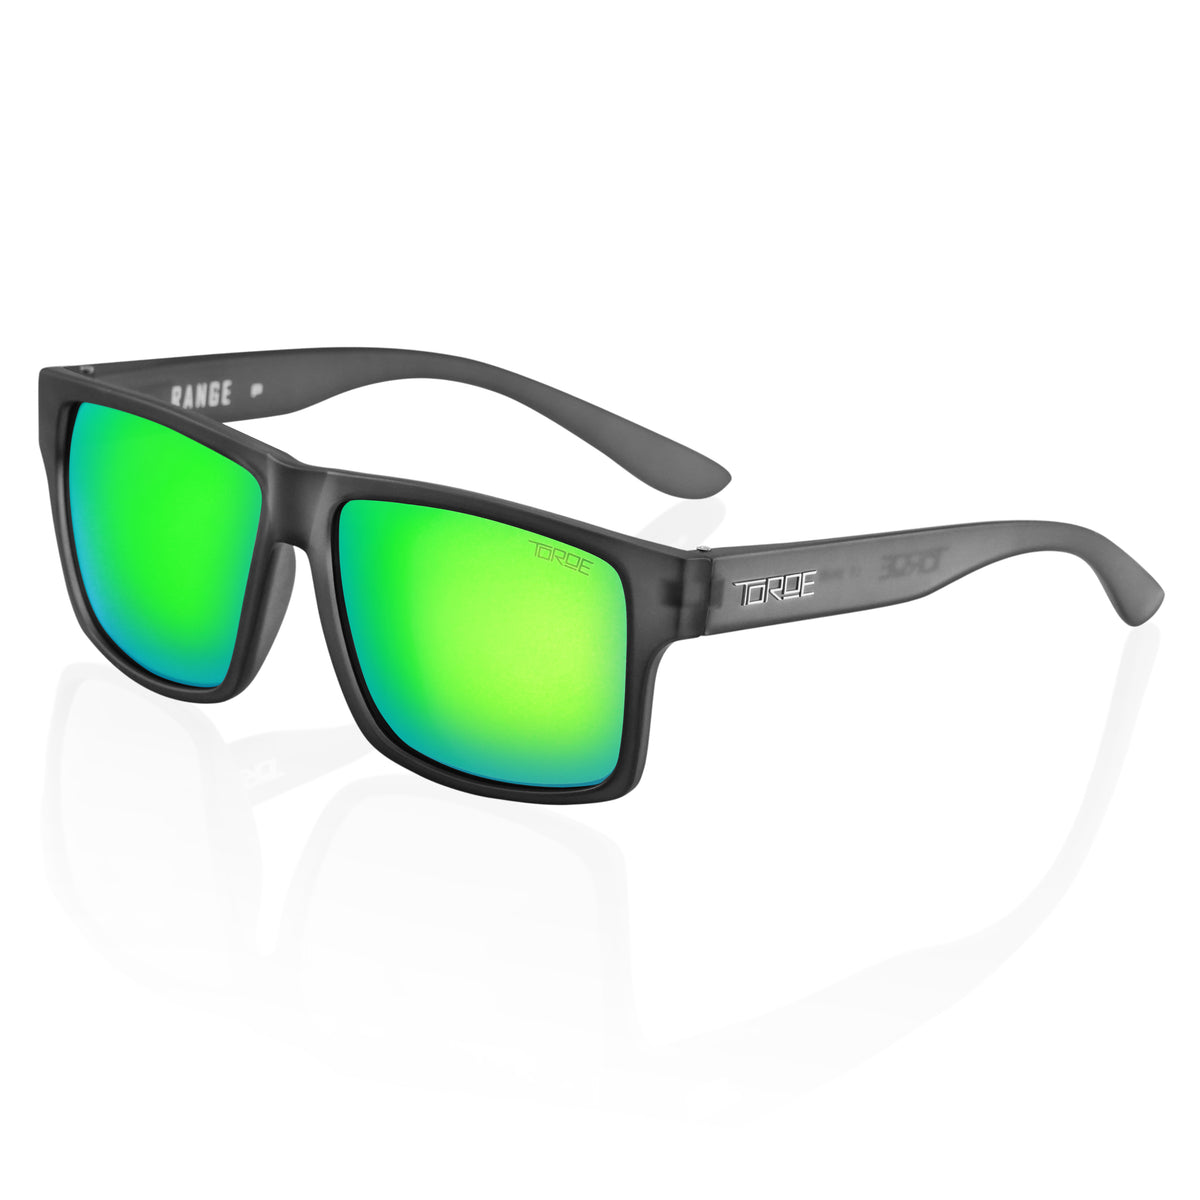 EXCLUSIVE Toroe \'RANGE\' Polarized Sunglasses with Lifetime Warranty – TOROE  Performance Eyewear